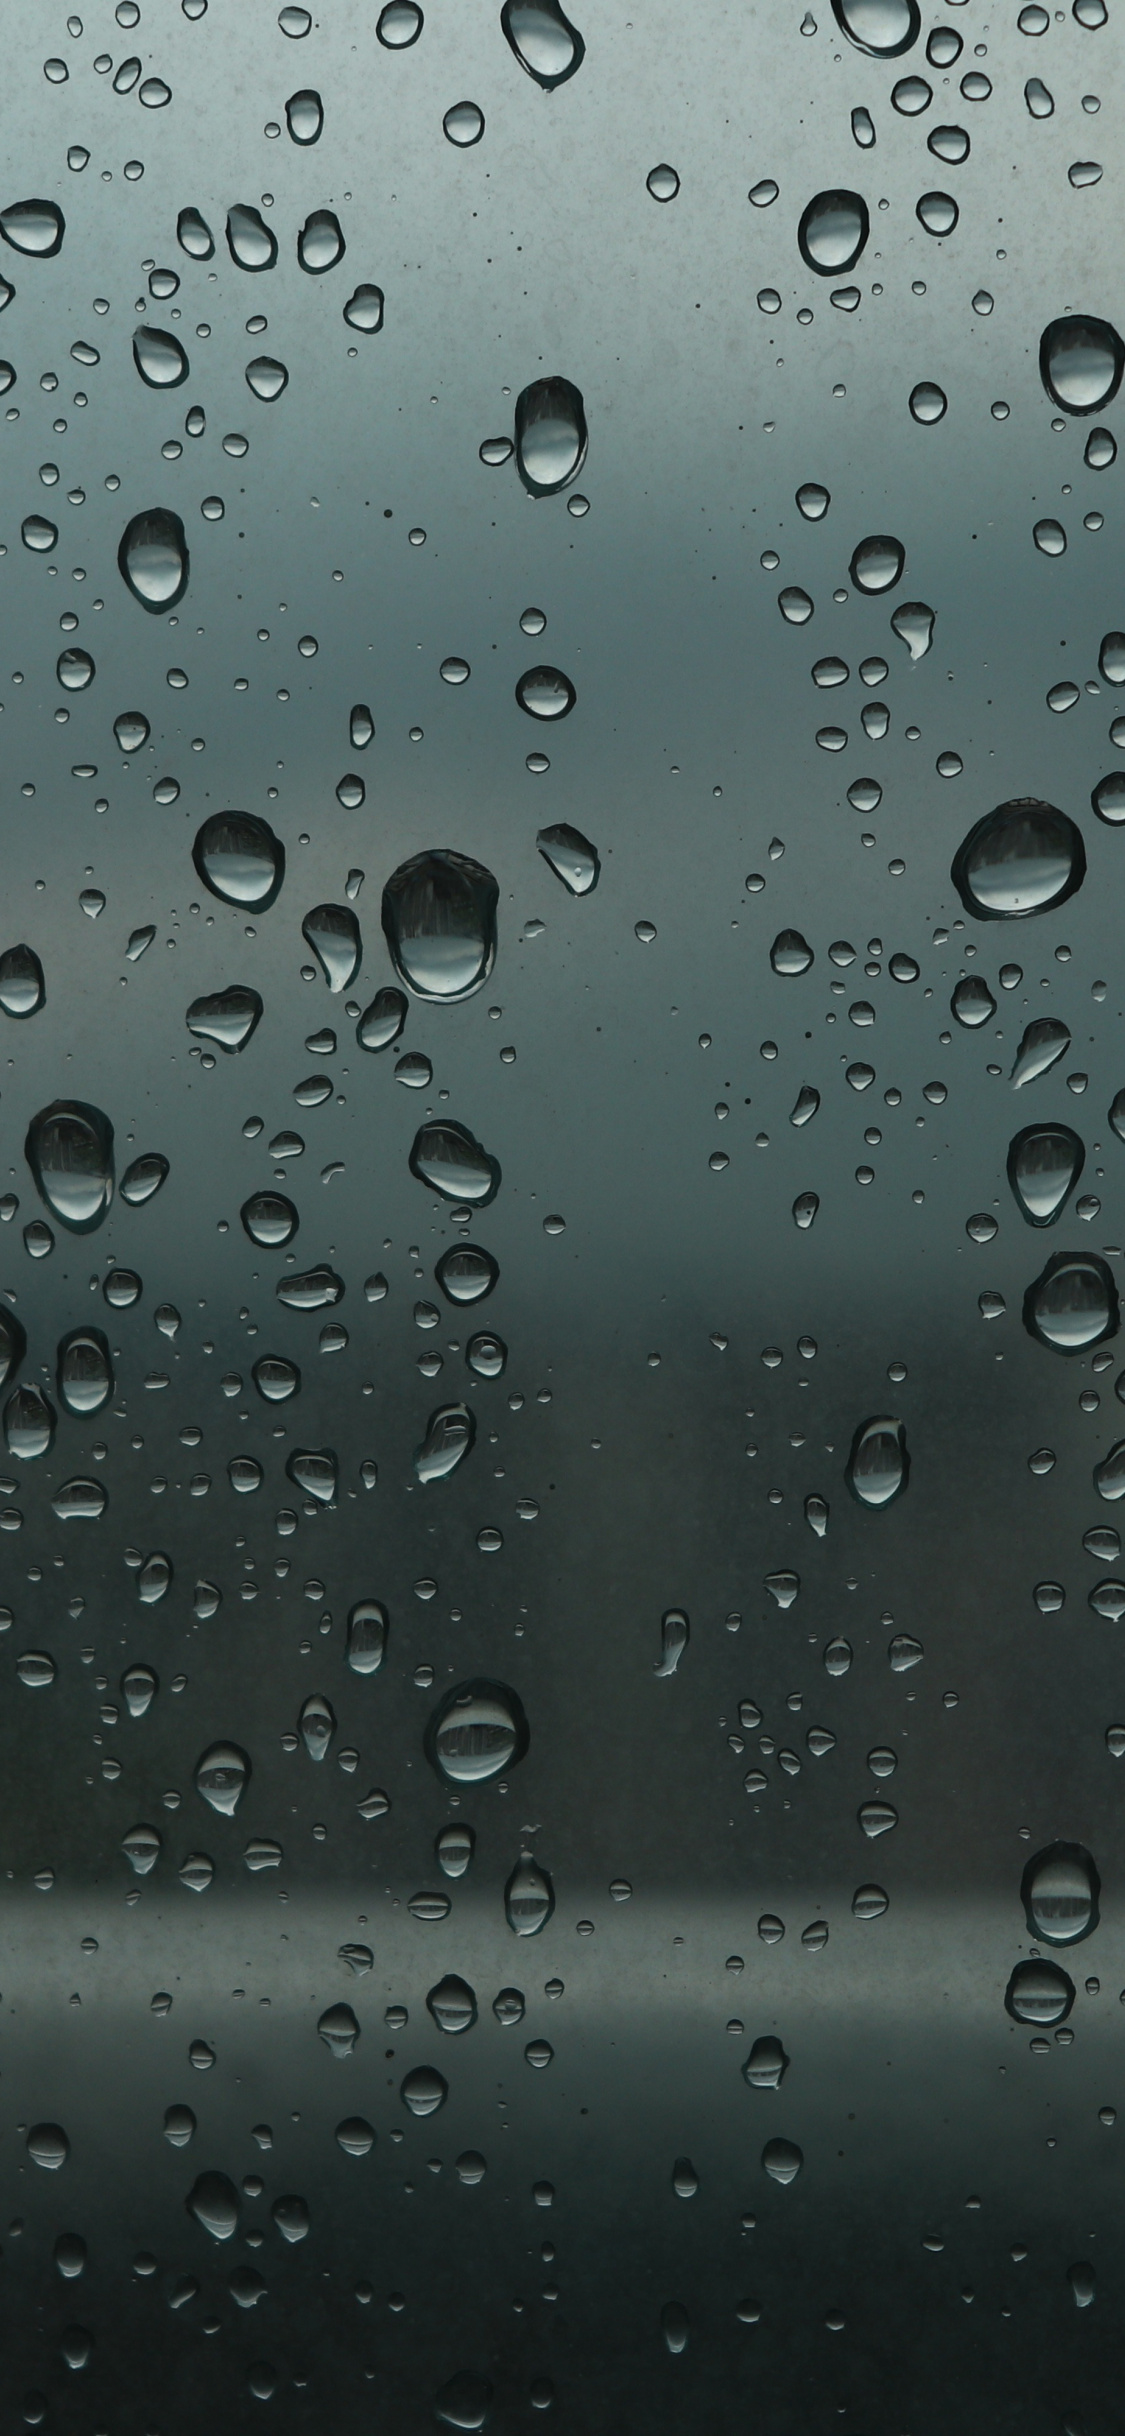 Water Drops, Glass S Wet Surface, Wallpaper - HD Wallpaper 